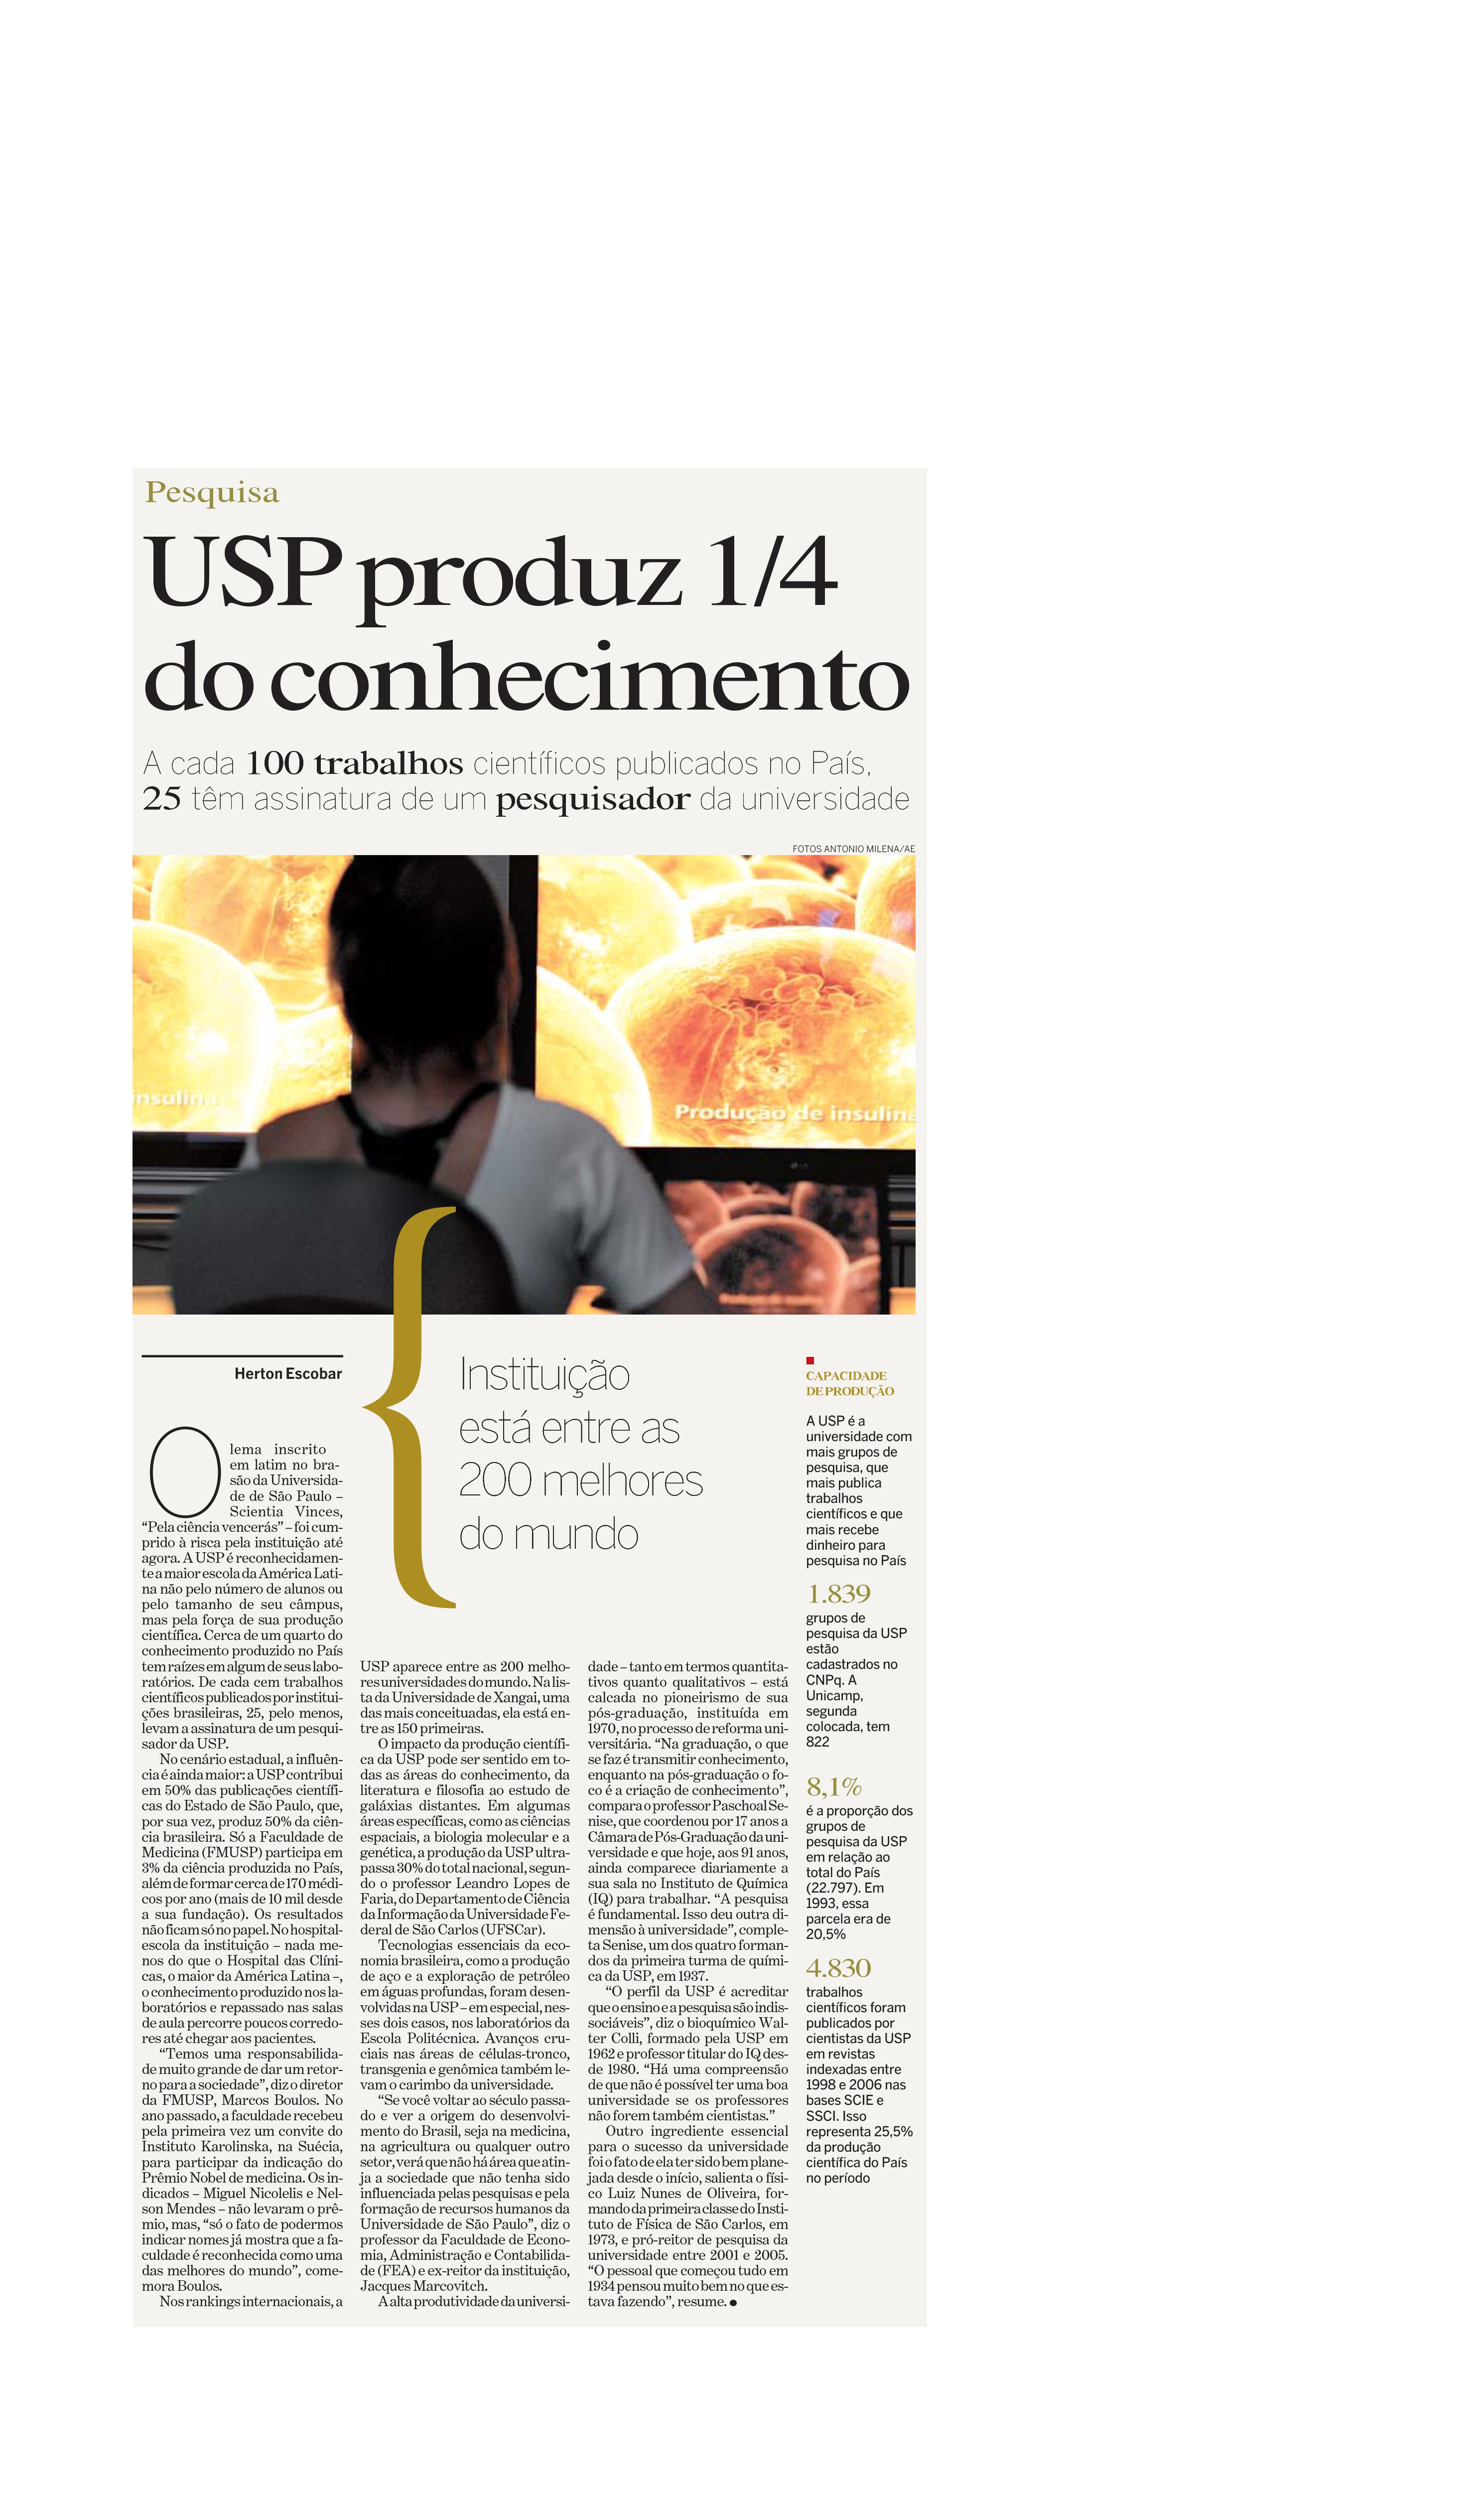 USP produz 1/4 do conhecimento do País